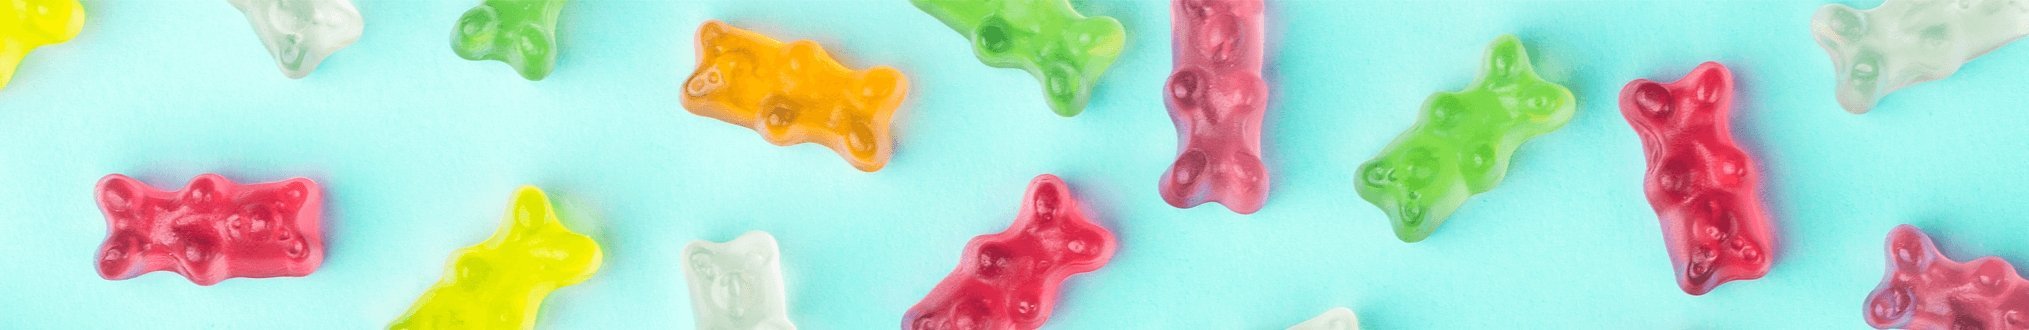 Berry Gummy Bears - 50g - Yo Keto